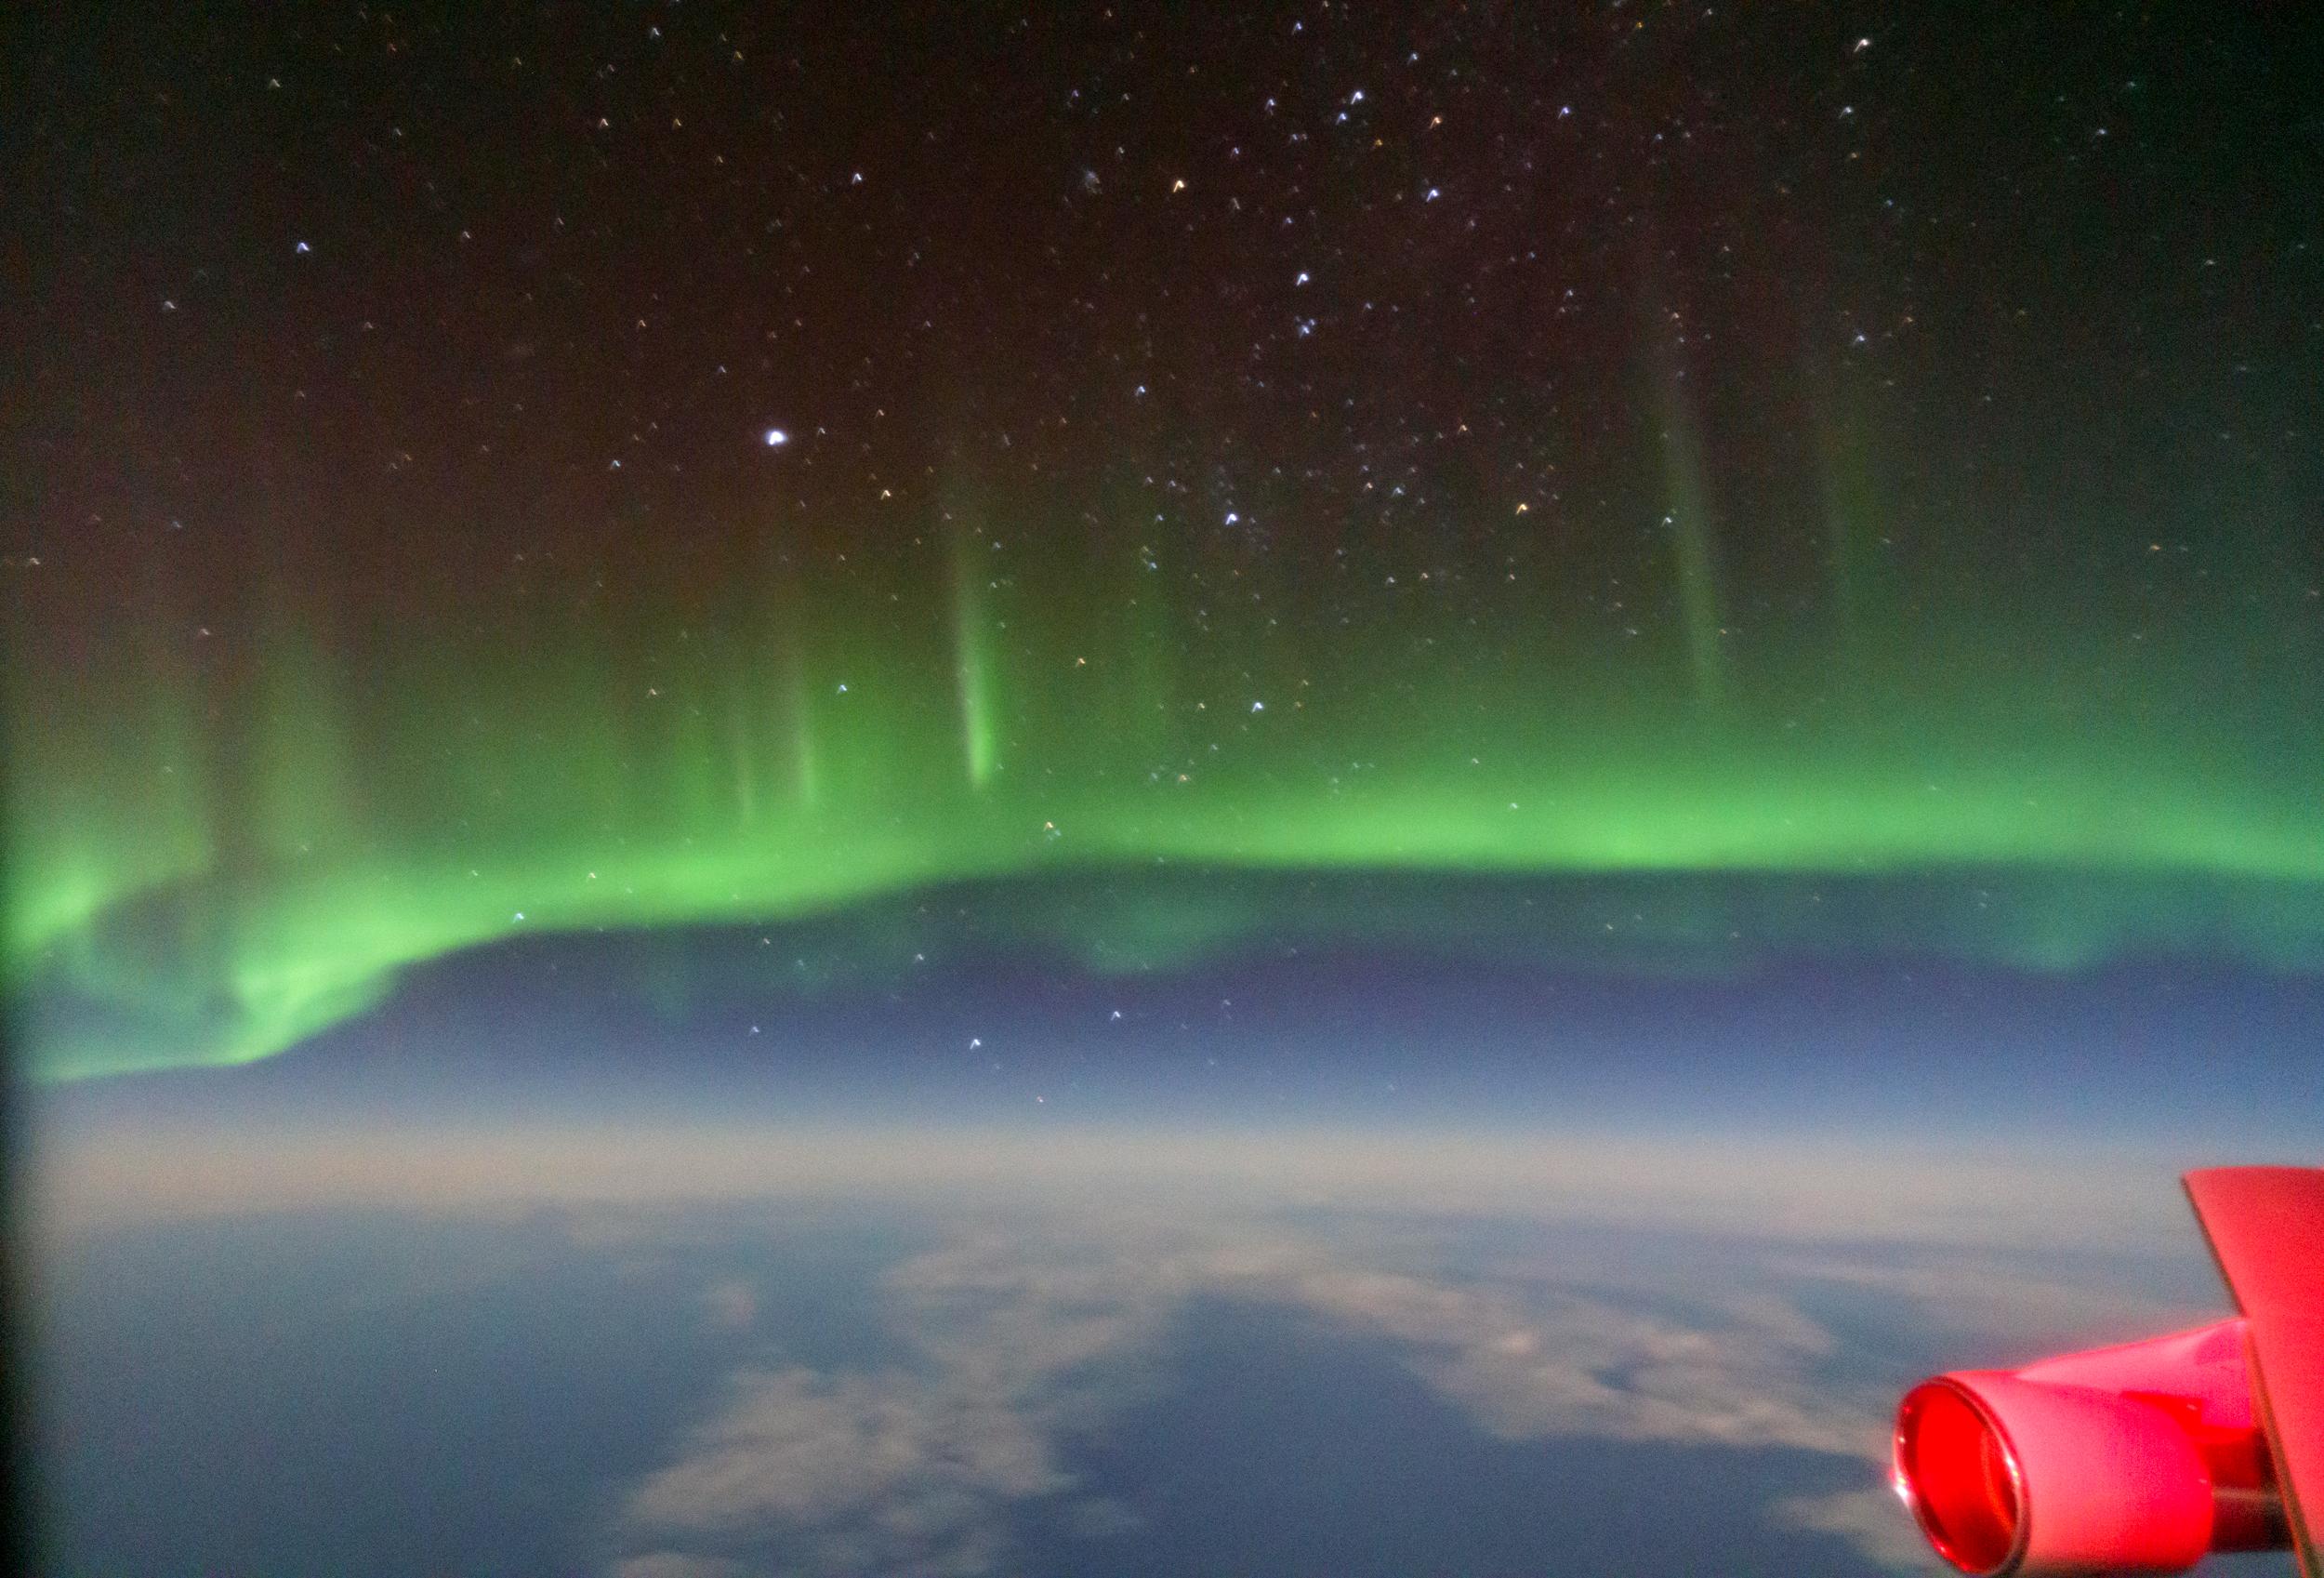 شفق قطبي أخضر وفوقه السماء بتجومها وتحته جزء منها أيضاً والأرض، ويظهر طرف طائرة على مايبدو بلون أحمر أسفل اليمين